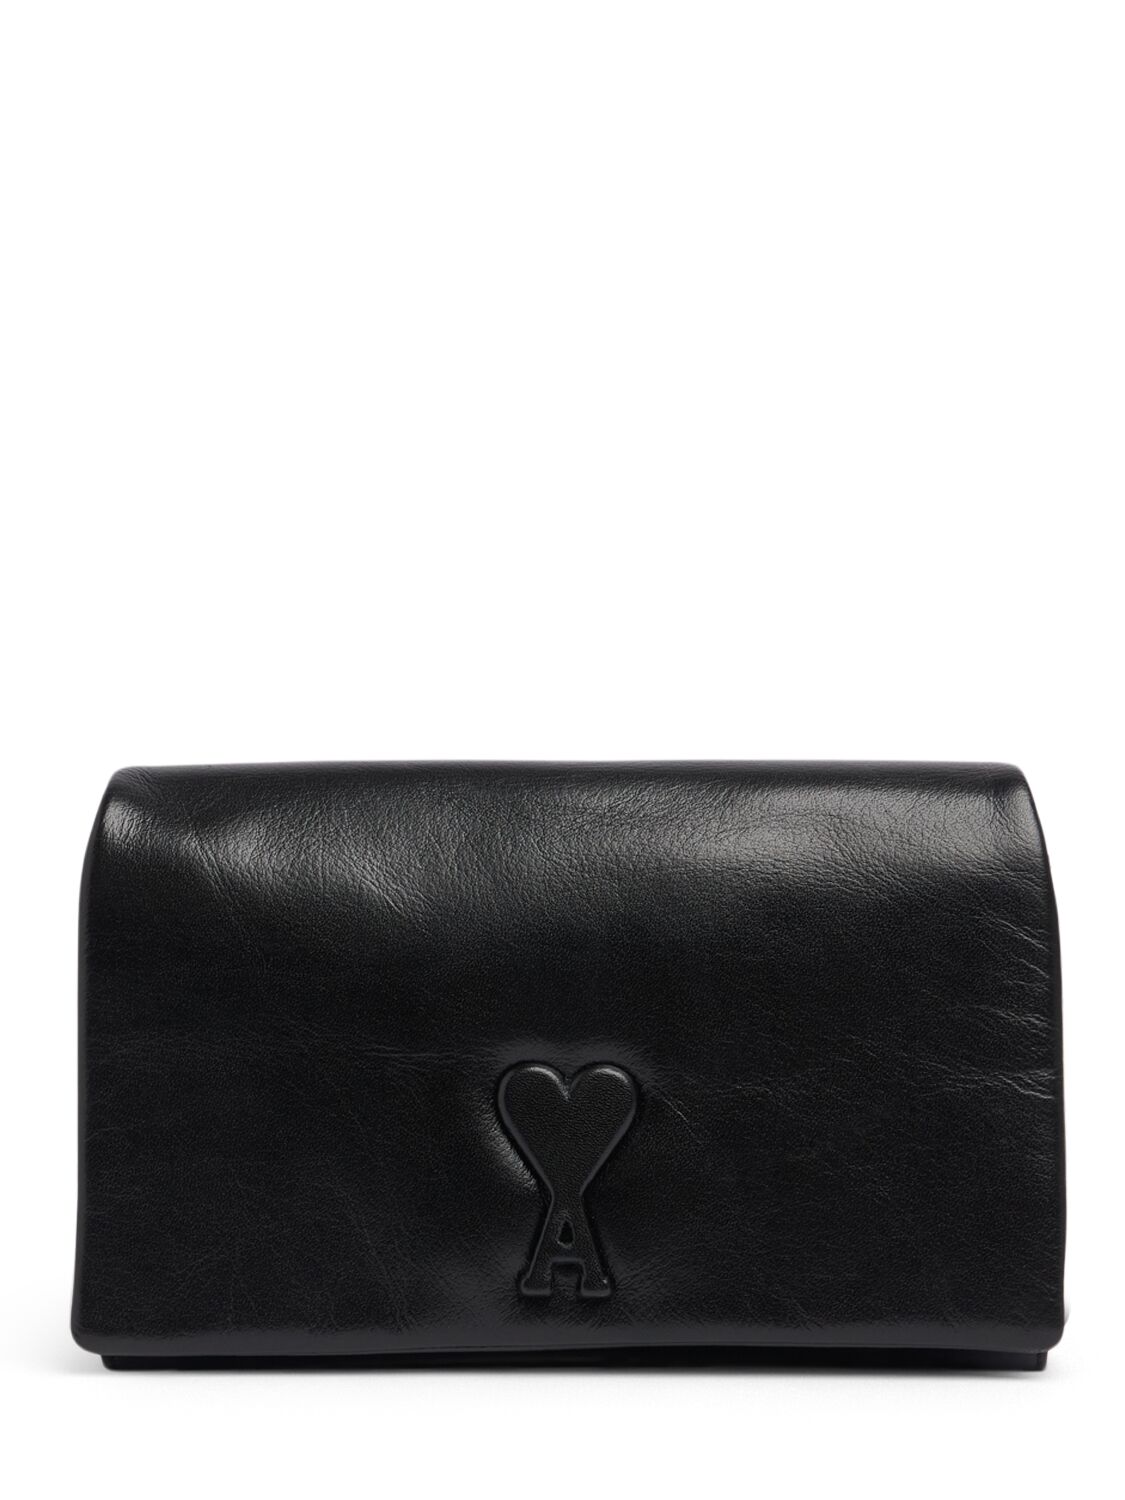 Image of Voulez Vous Leather Wallet Clutch